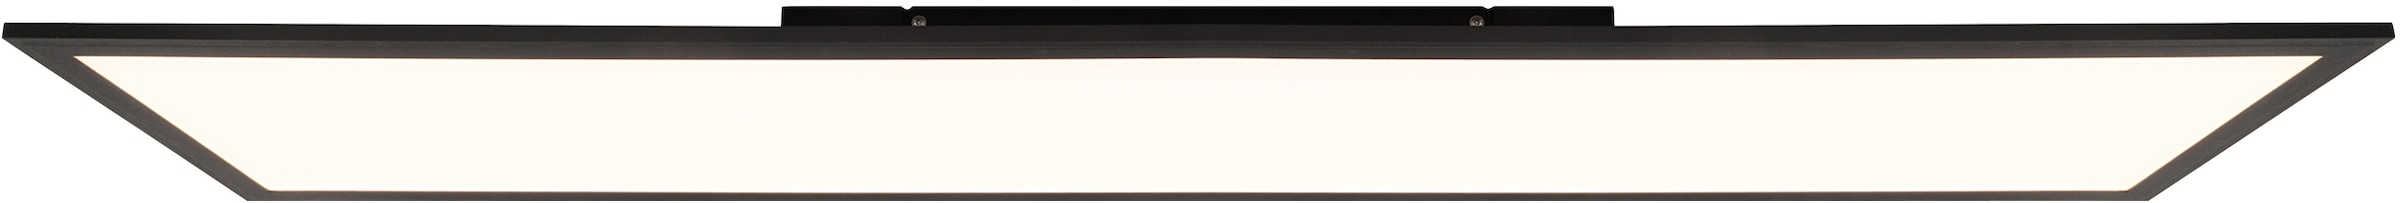 Brilliant Leuchten LED Panel »Abie«, mit RGB Farbwechsel, dimmbar, 120x30 cm,  3800 Lumen, Farbtemperatur 2700-6500 Kelvin einstellbar, inkl. Fernbedienung  online kaufen | mit 3 Jahren XXL Garantie